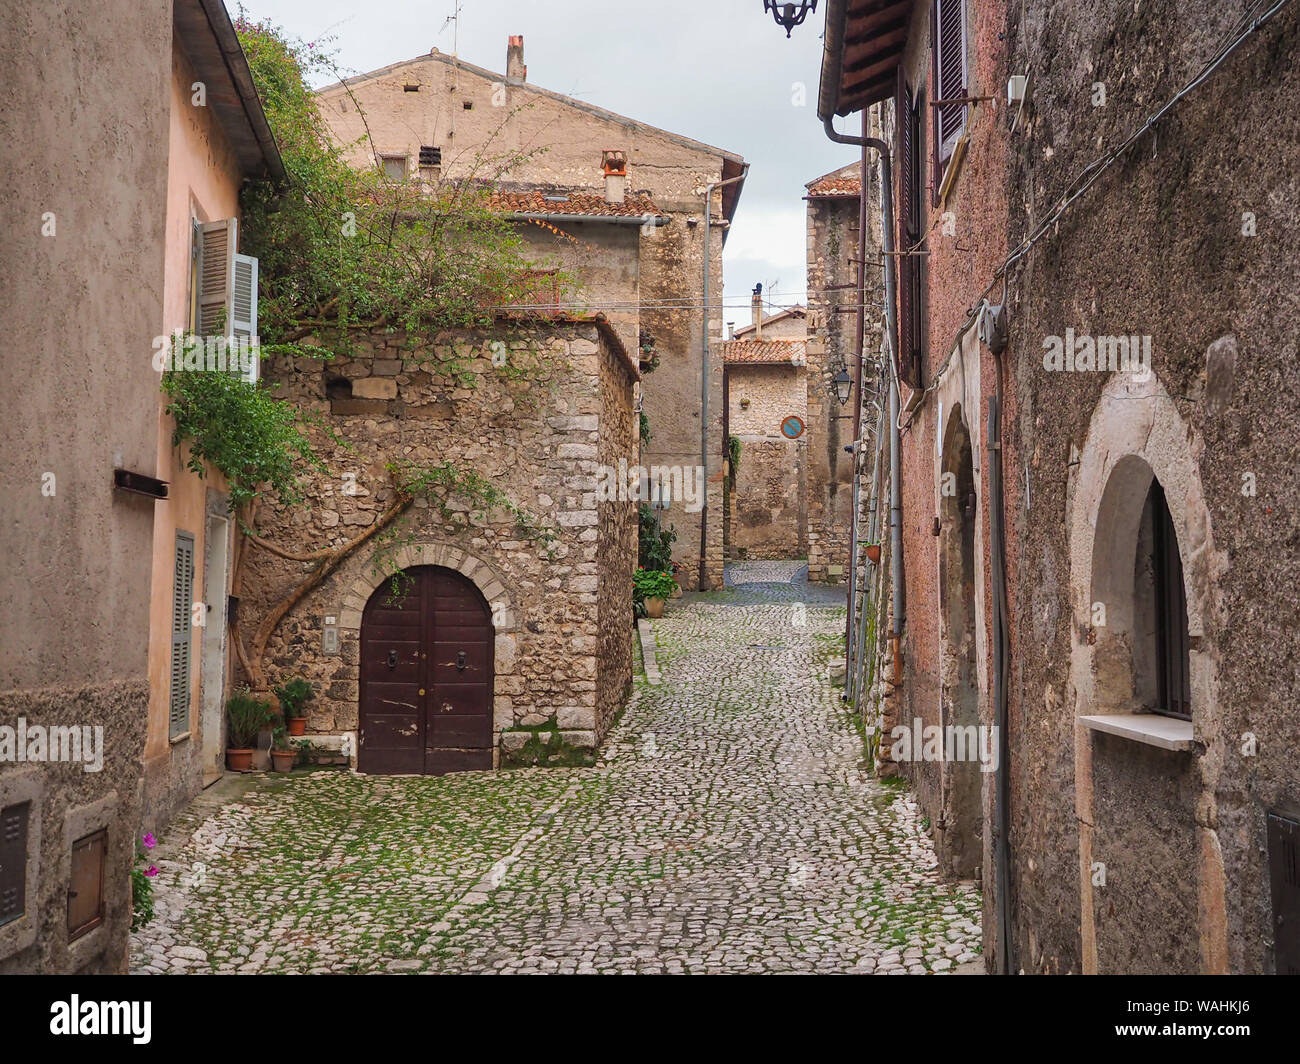 Una pietra di strette strade lastricate e vecchie case medievali con arcate di porte in legno anche metallo tende alle finestre in cittadina antica Sermoneta, Italia Foto Stock